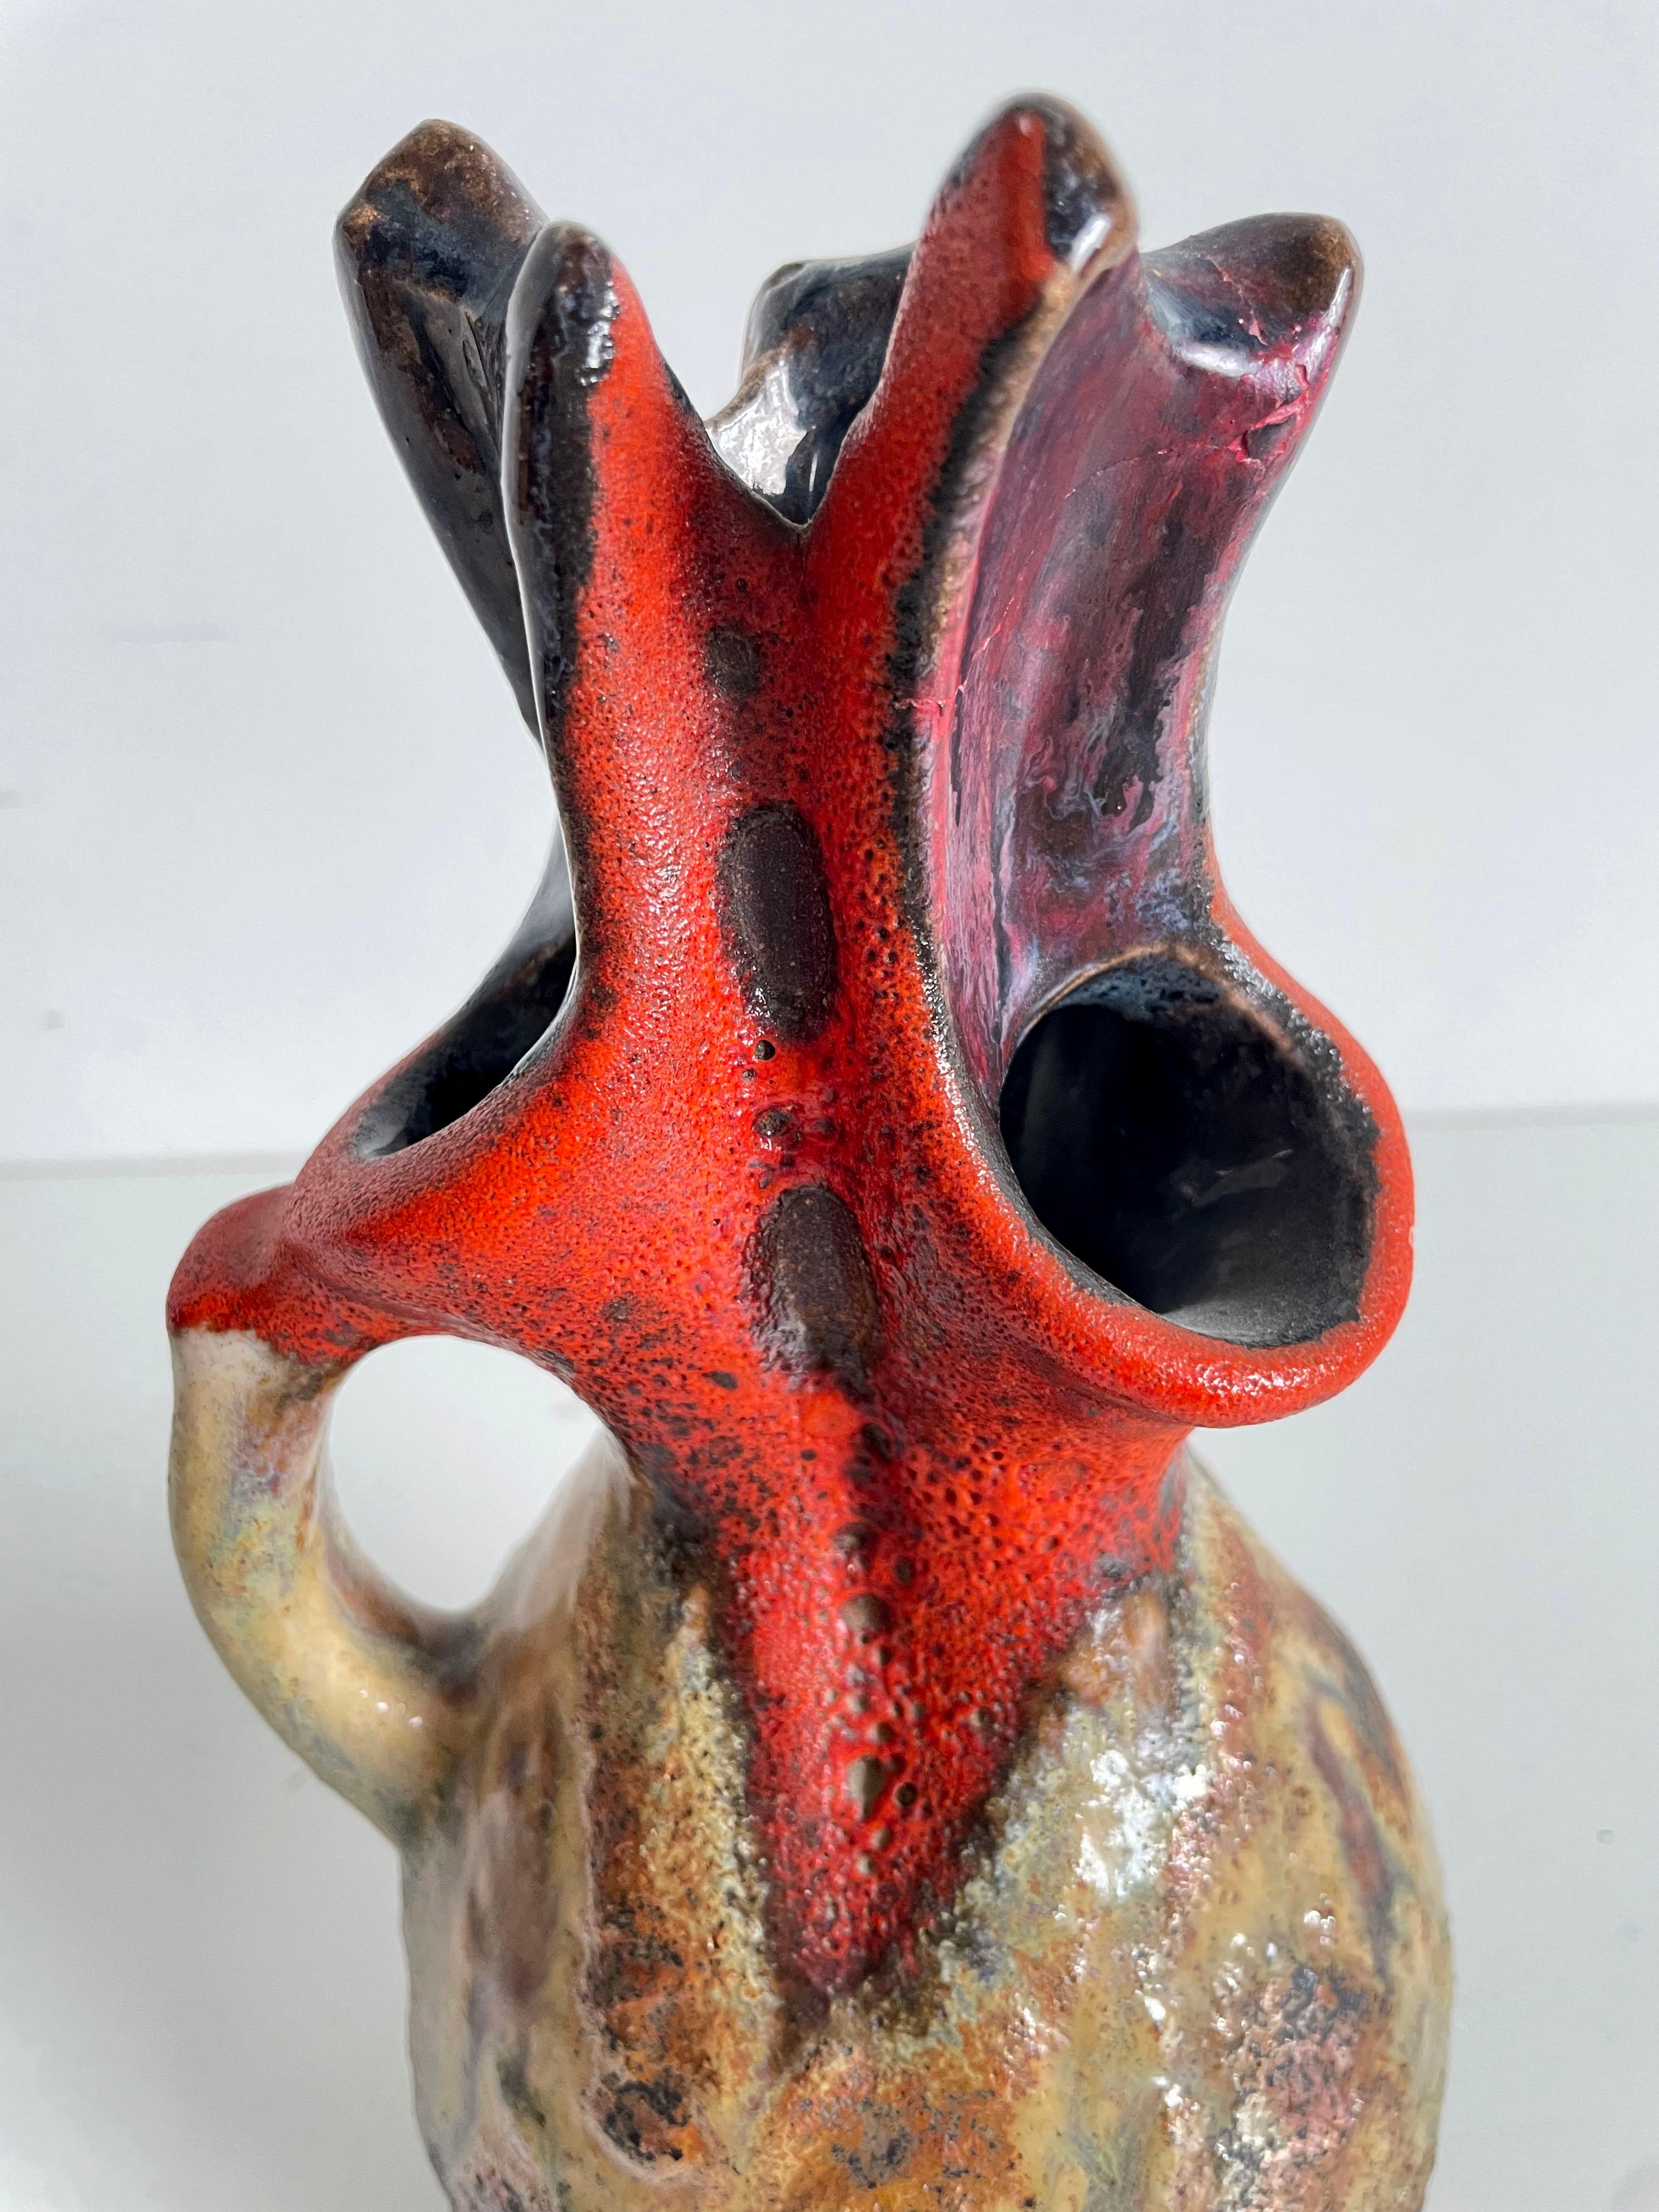 Eine seltene Walter Gerhards Design fette Lava Krug Vase in organischer Form  mit den schönen Farben Braun-Beige und Rot, Formnummer 200-26, Westdeutschland 1970.

Die Vase ist in ausgezeichnetem Zustand und wiegt 1,2 kg.